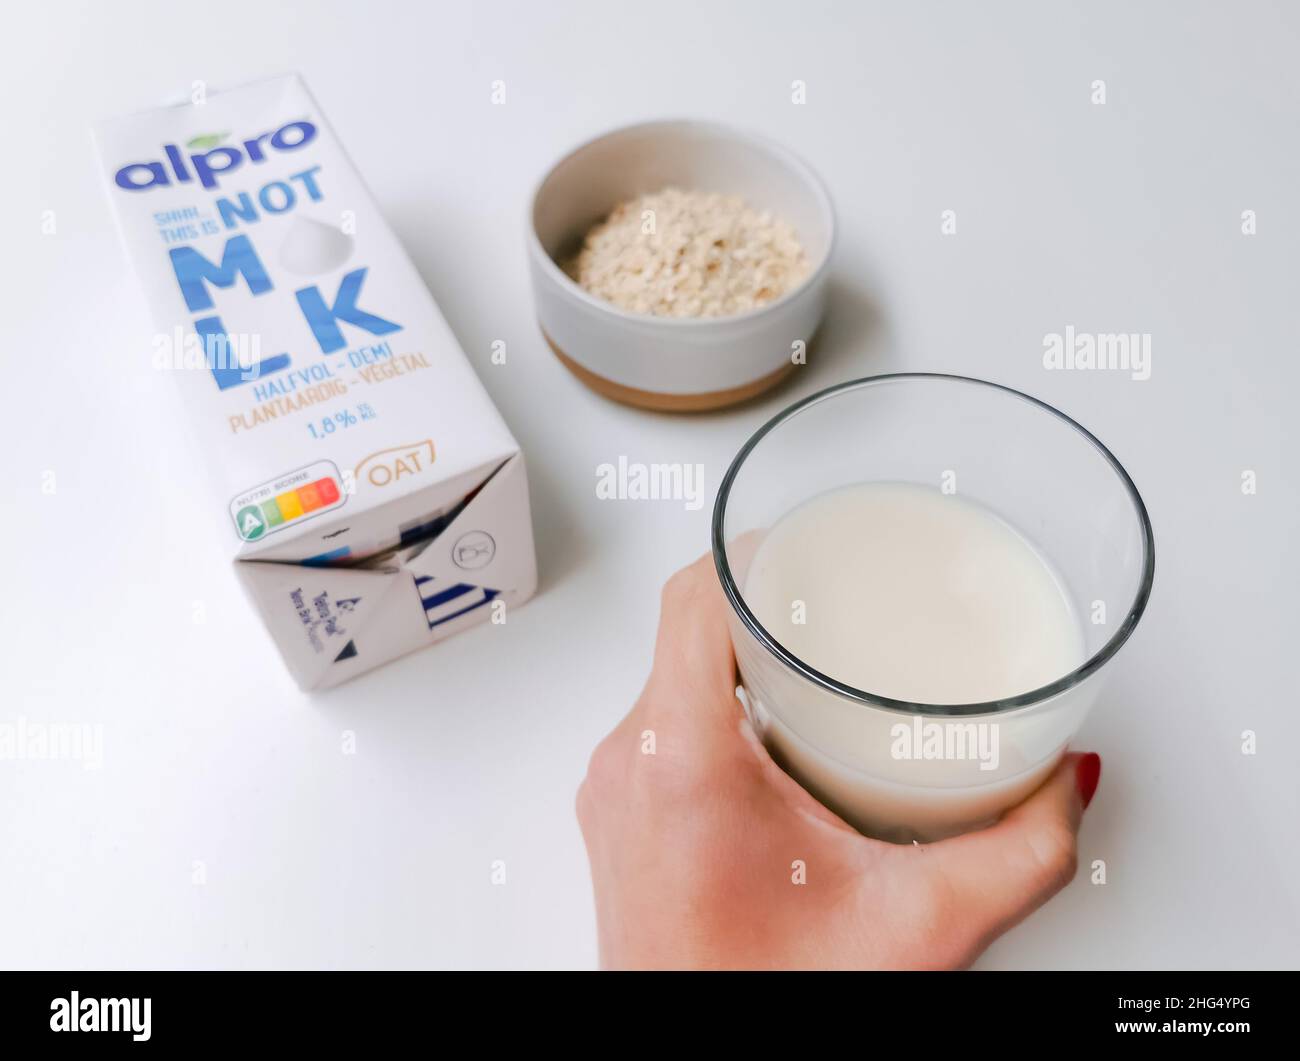 Belgique - janvier 2022: Carton de lait alternatif Alpro non MLK à base végétale fabriqué à partir d'avoine.Concept de boisson à base d'usine Banque D'Images